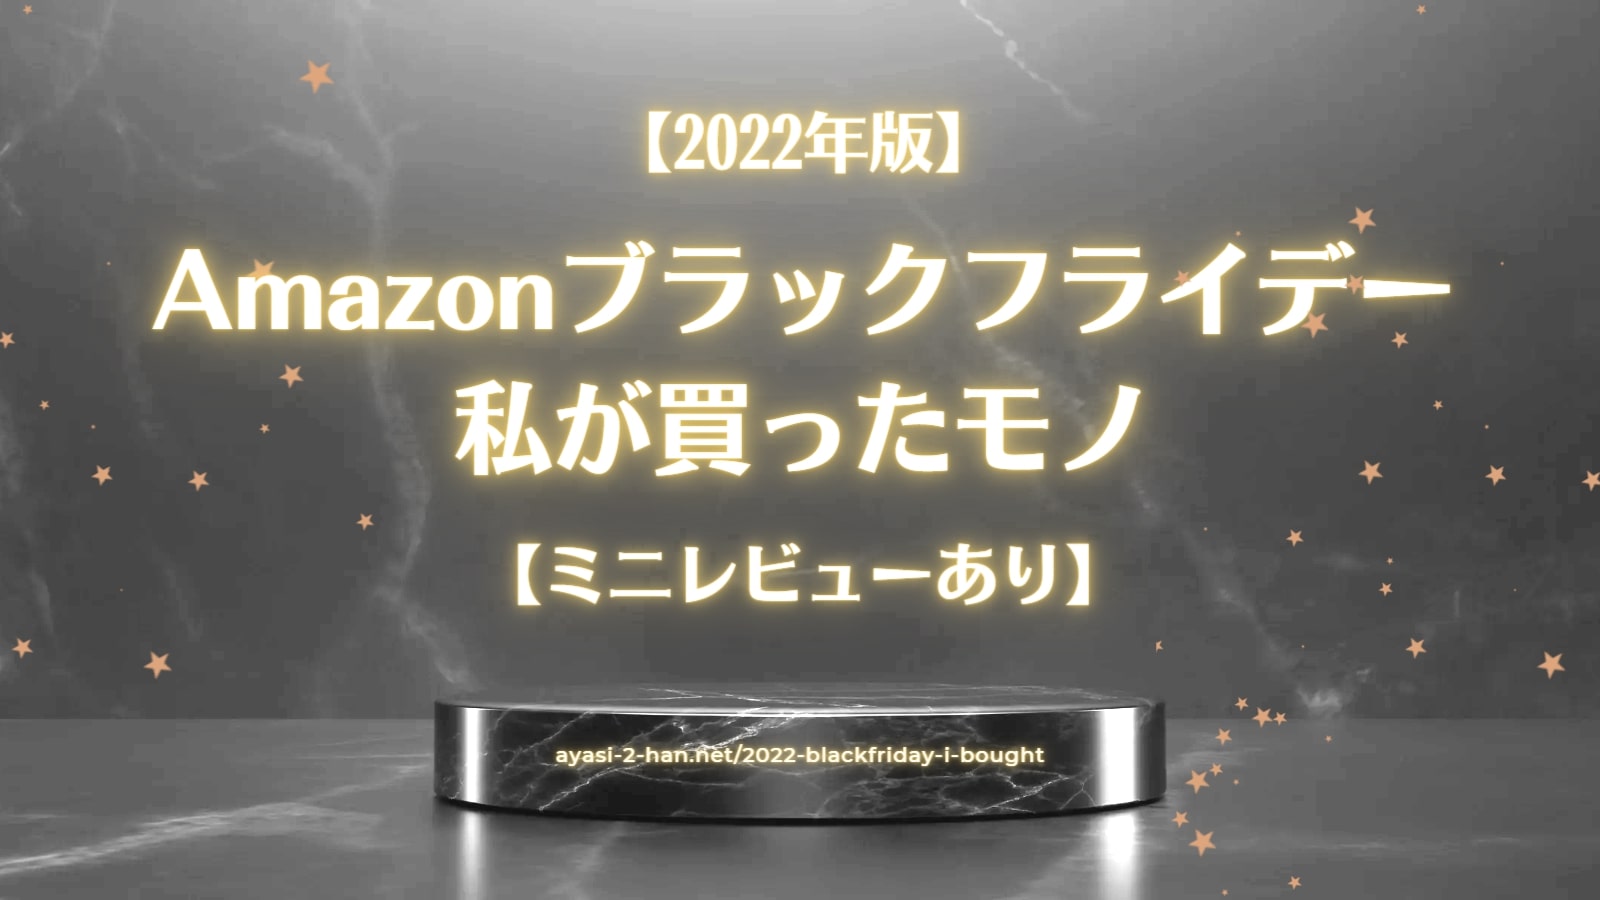 Amazon2022-blackfriday-i-bought